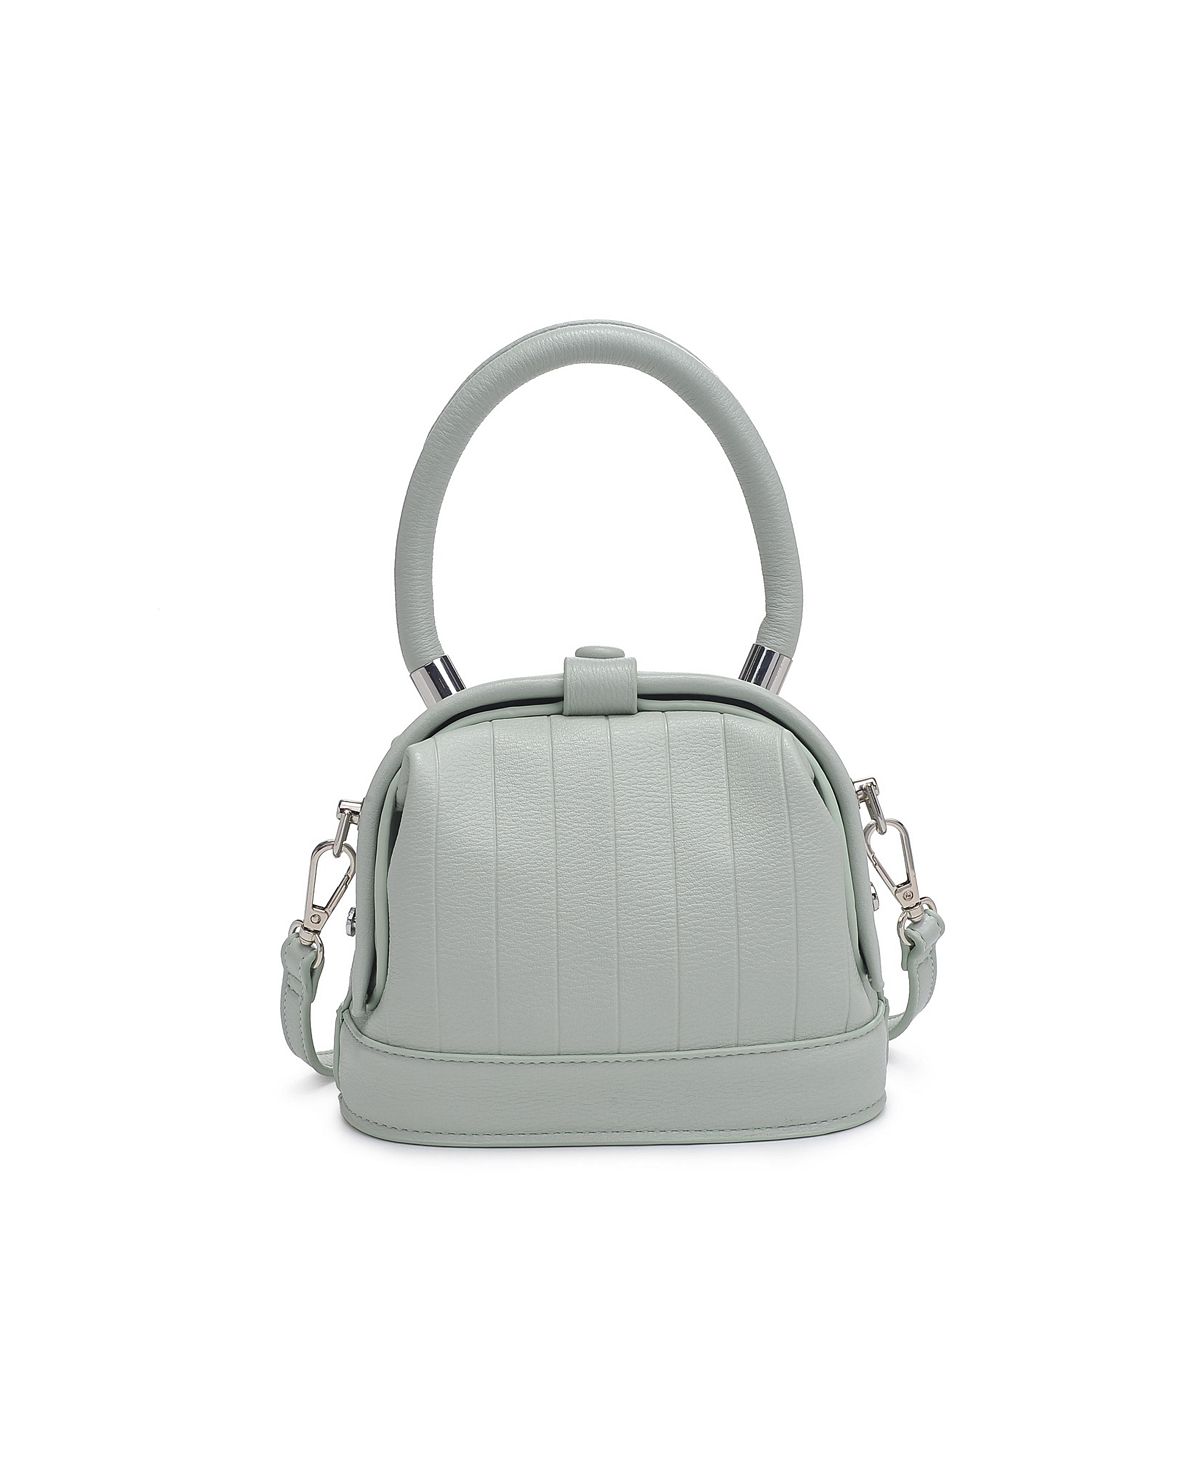 Миниатюрная сумка через плечо Charmain Moda Luxe сумка через плечо moda luxe jules с цветочным принтом